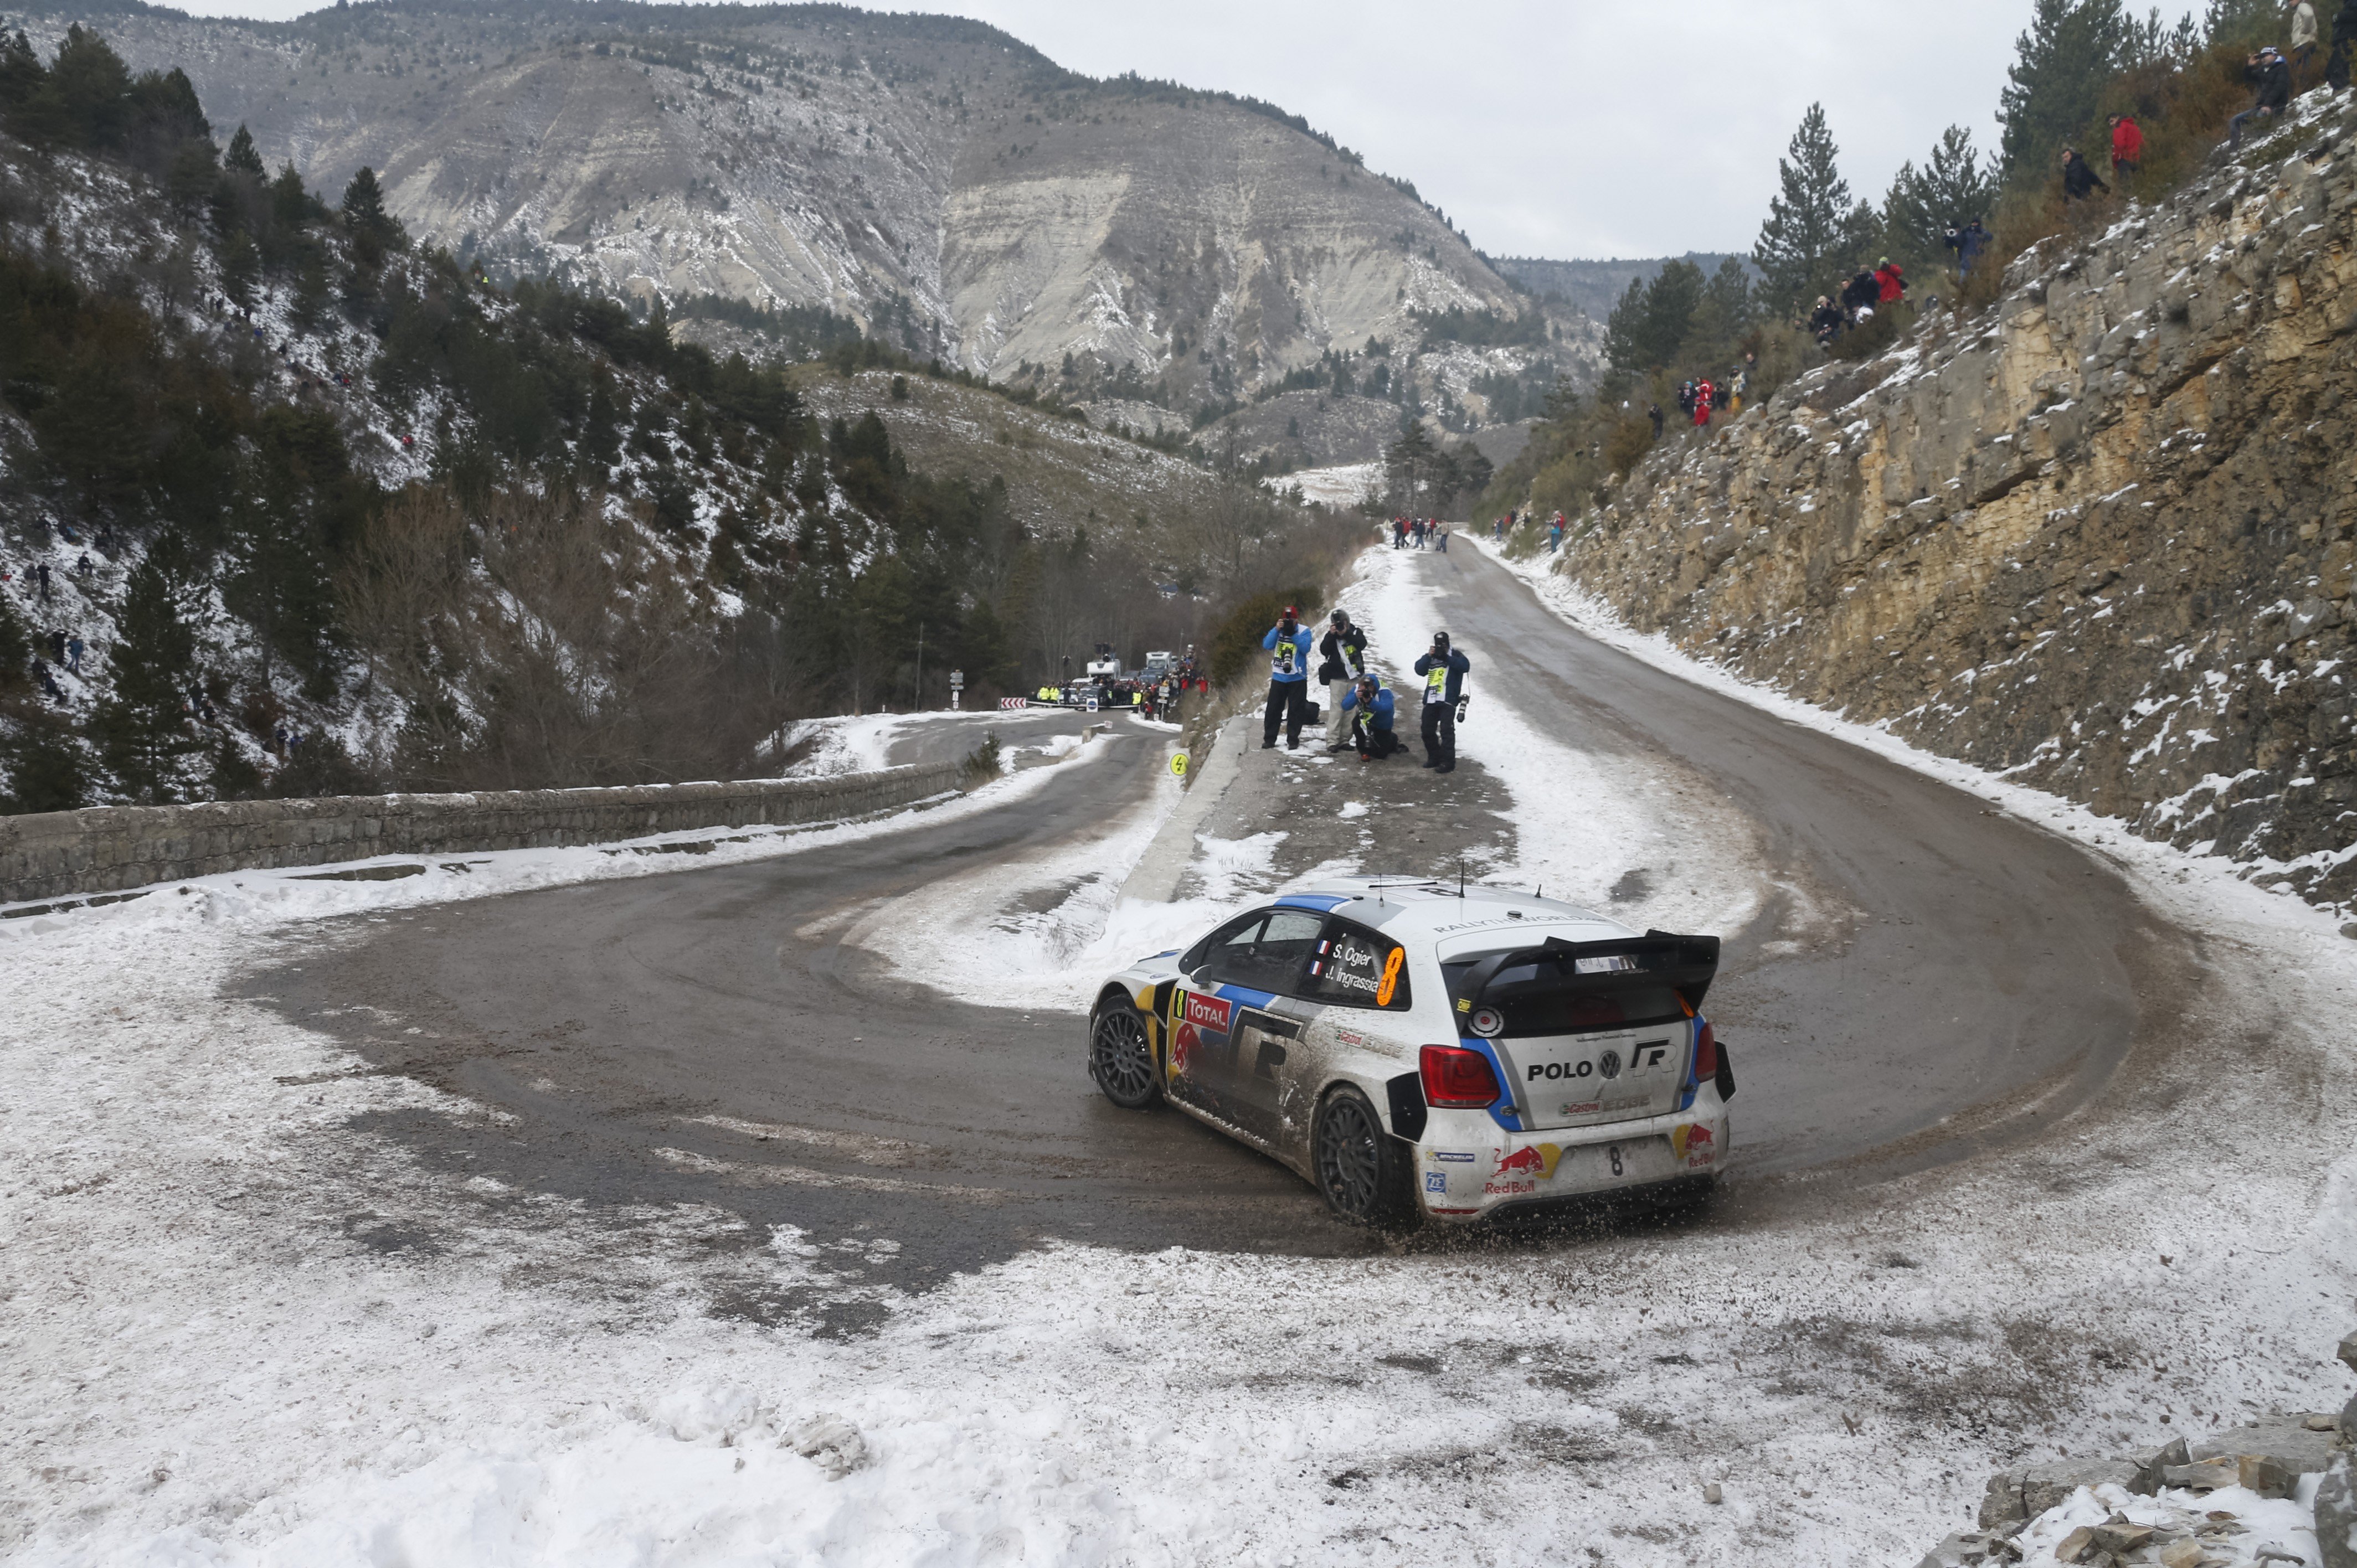 Sébastien Ogier, Rally cars, Volkswagen Polo, Snow, Mountain pass, Monaco, VW Polo WRC Wallpaper